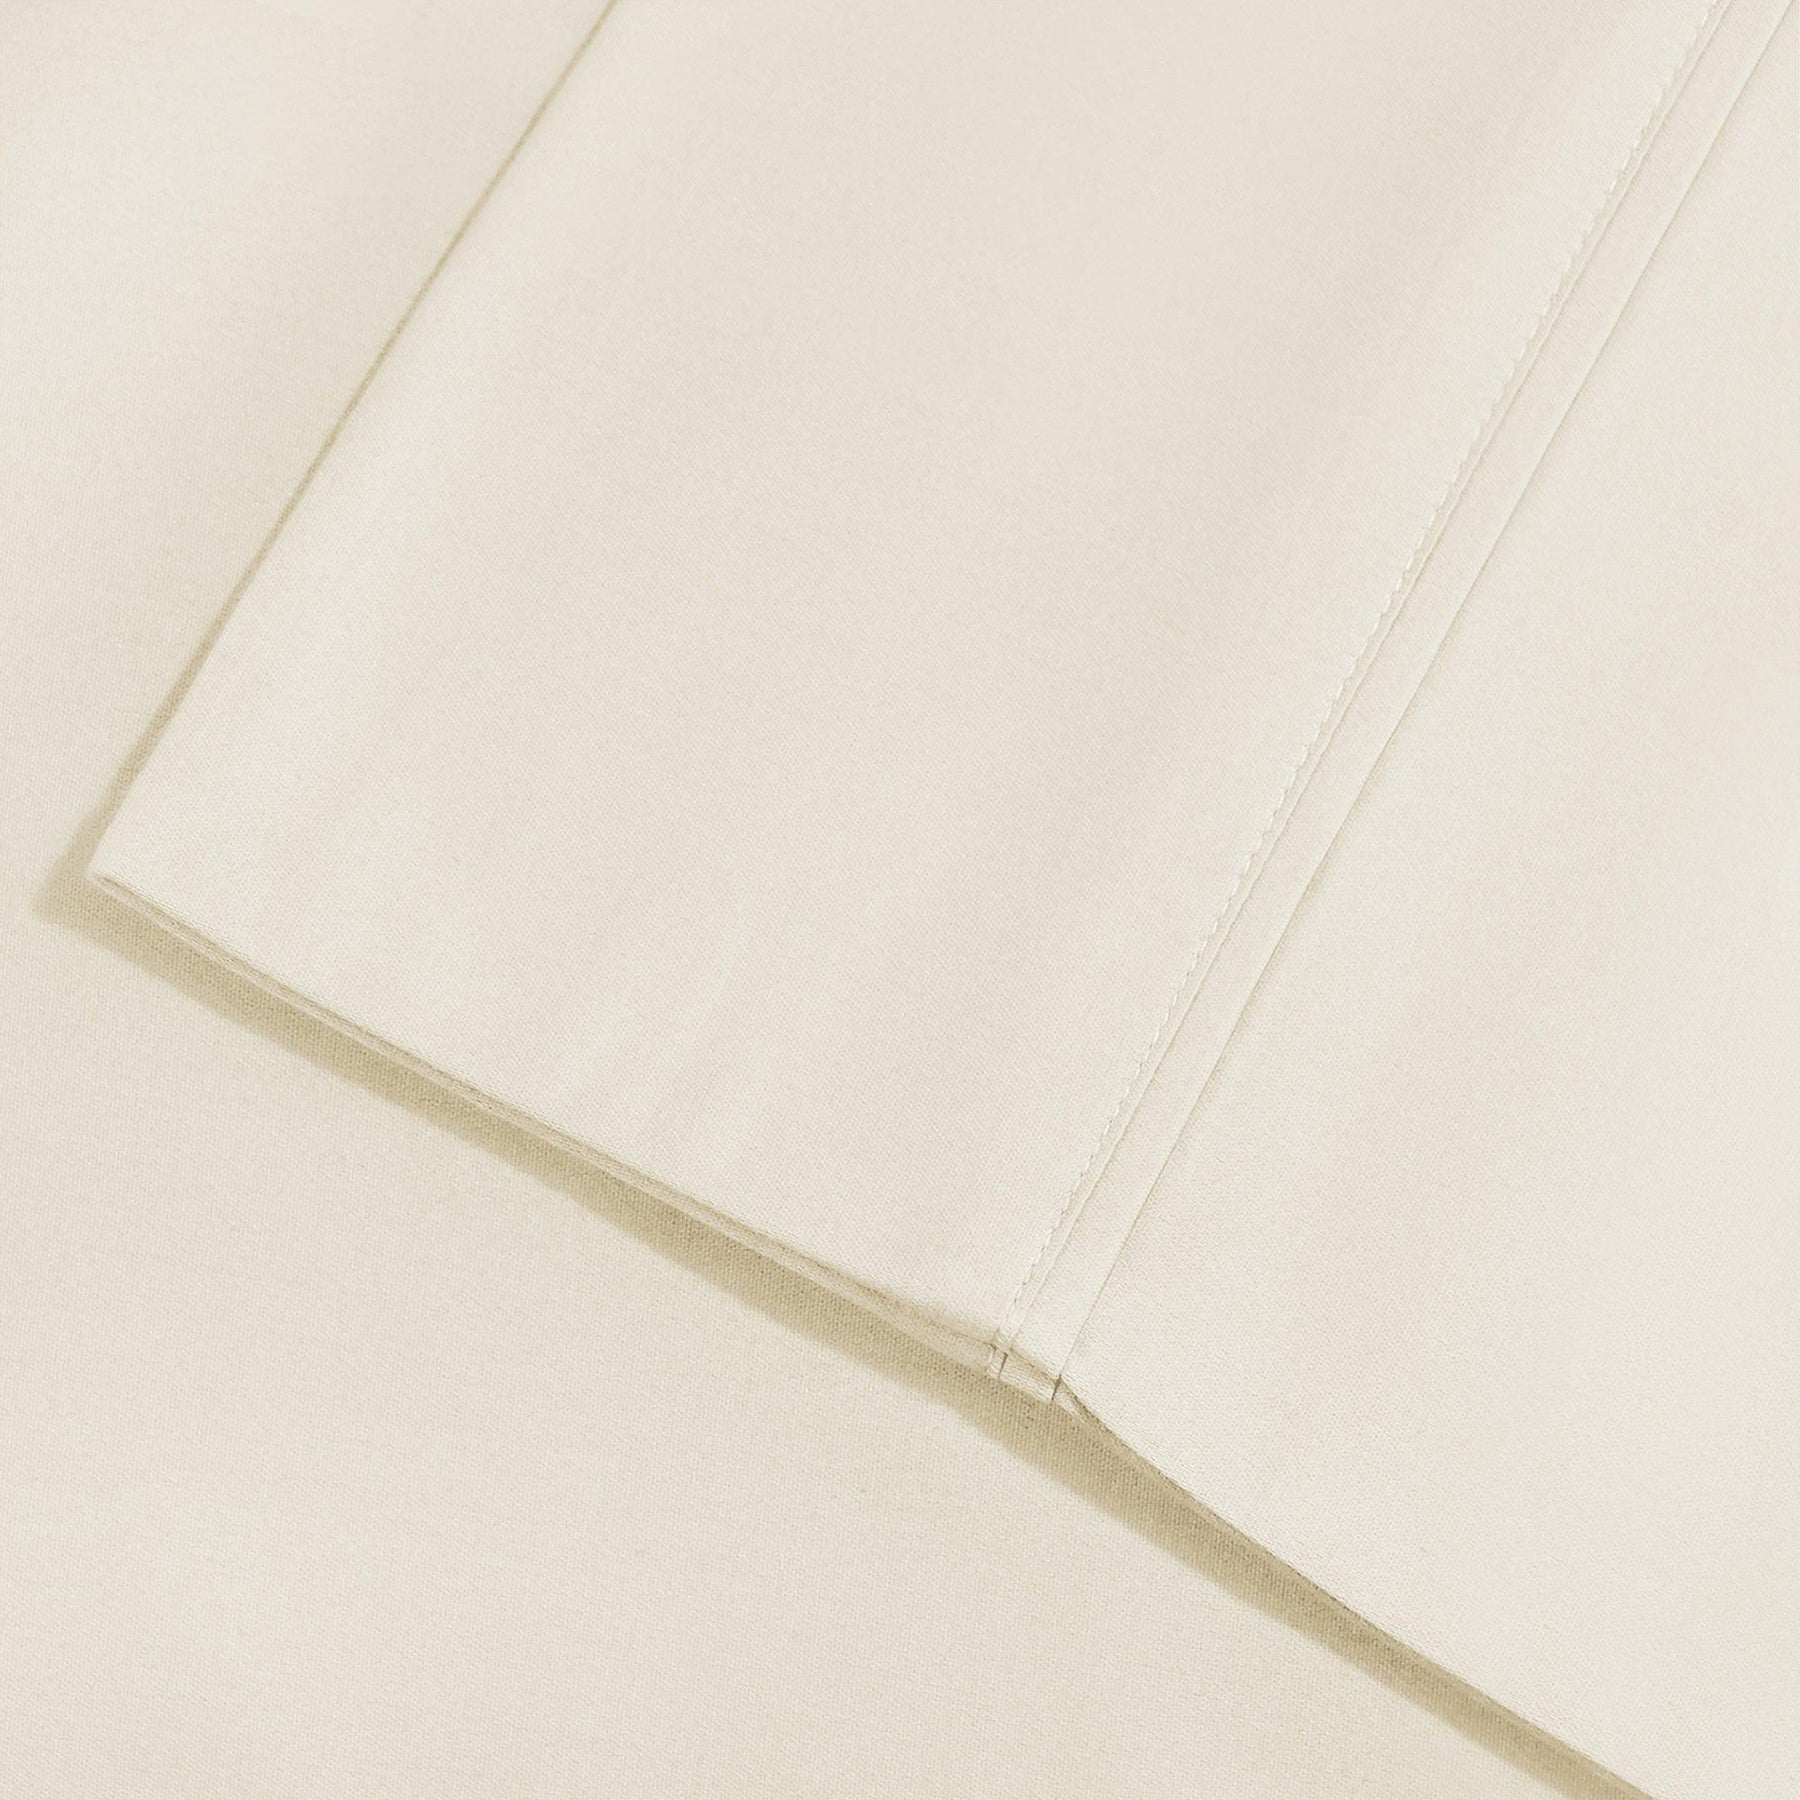  Superior Solid Count Cotton Blend Deep Pocket Sheet Set - Ivory